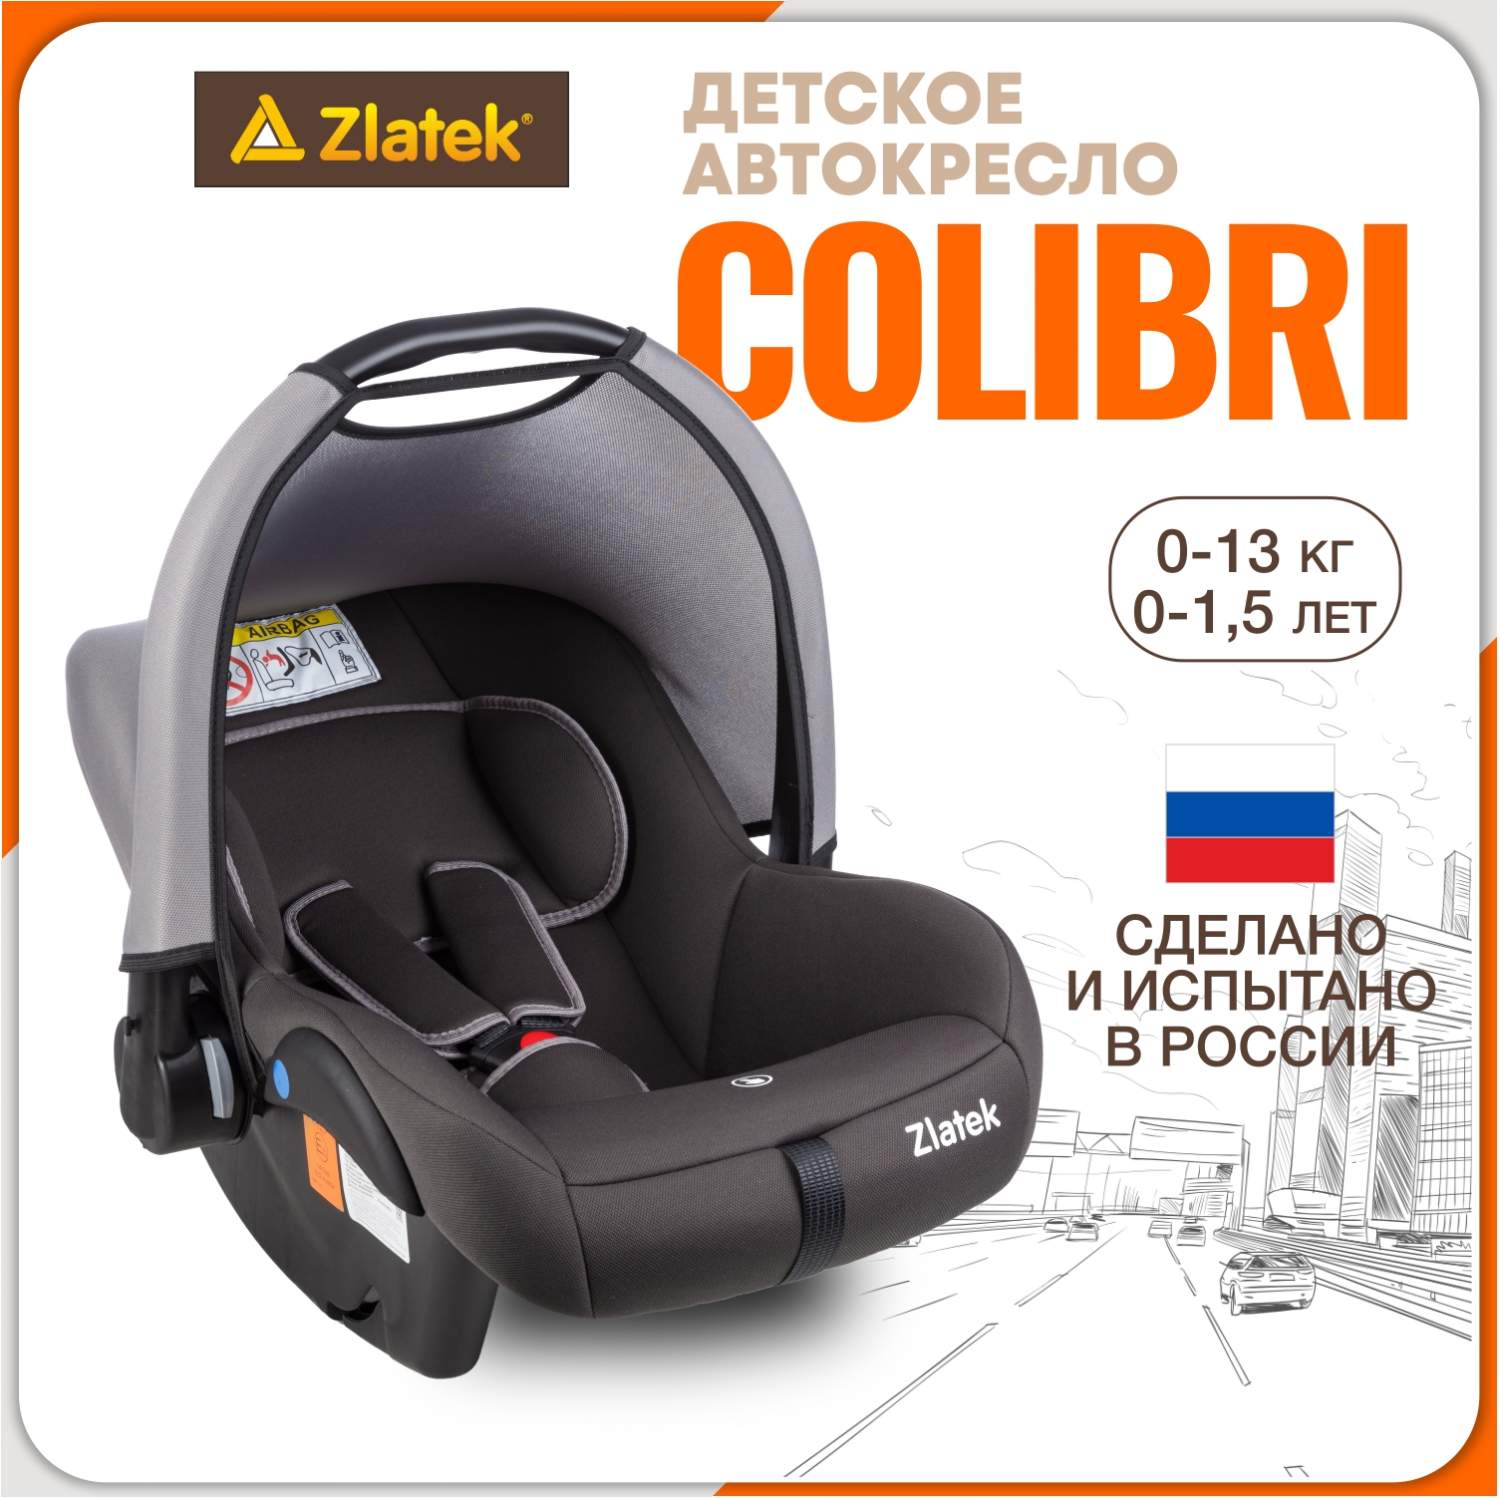 Купить автолюлька для новорожденных Zlatek Colibri от 0 до 13 кг, цветсерый умбра, цены в Москве на Мегамаркет